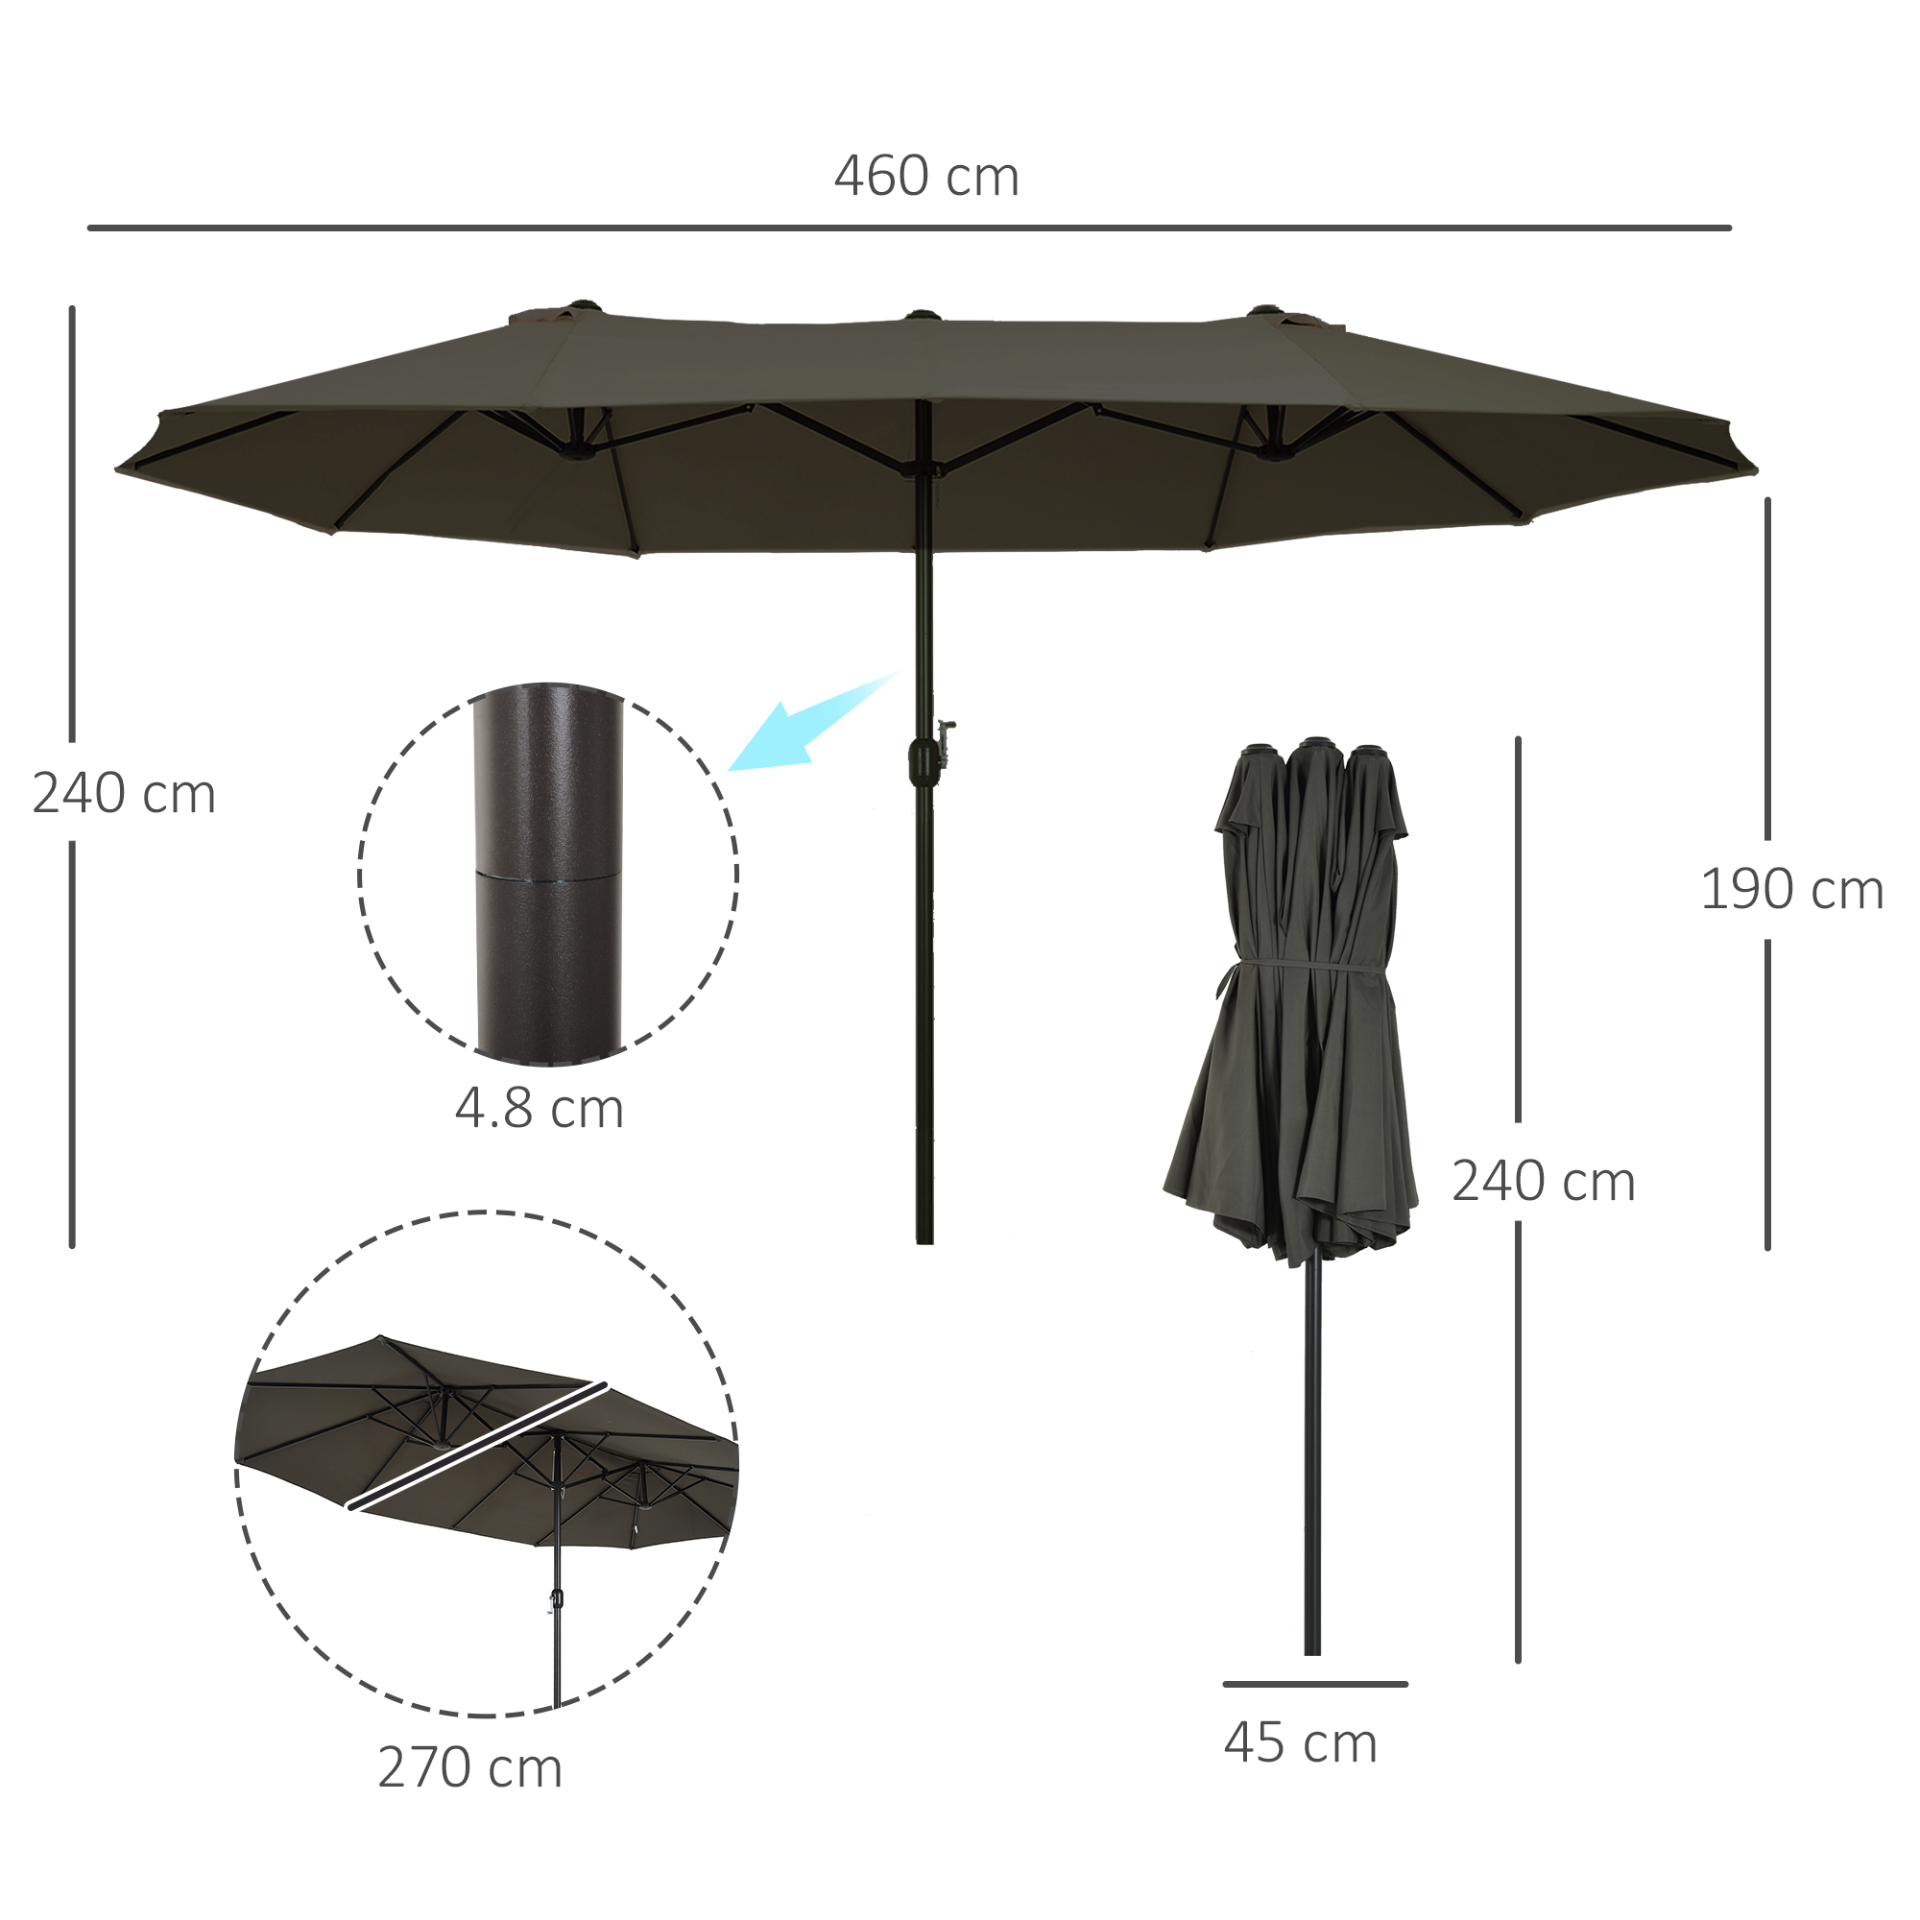 Outsunny 4.6m Garden Parasol Double-Sided Sun Umbrella Patio Market Shelter Canopy Shade Outdoor Grey - NO BASE